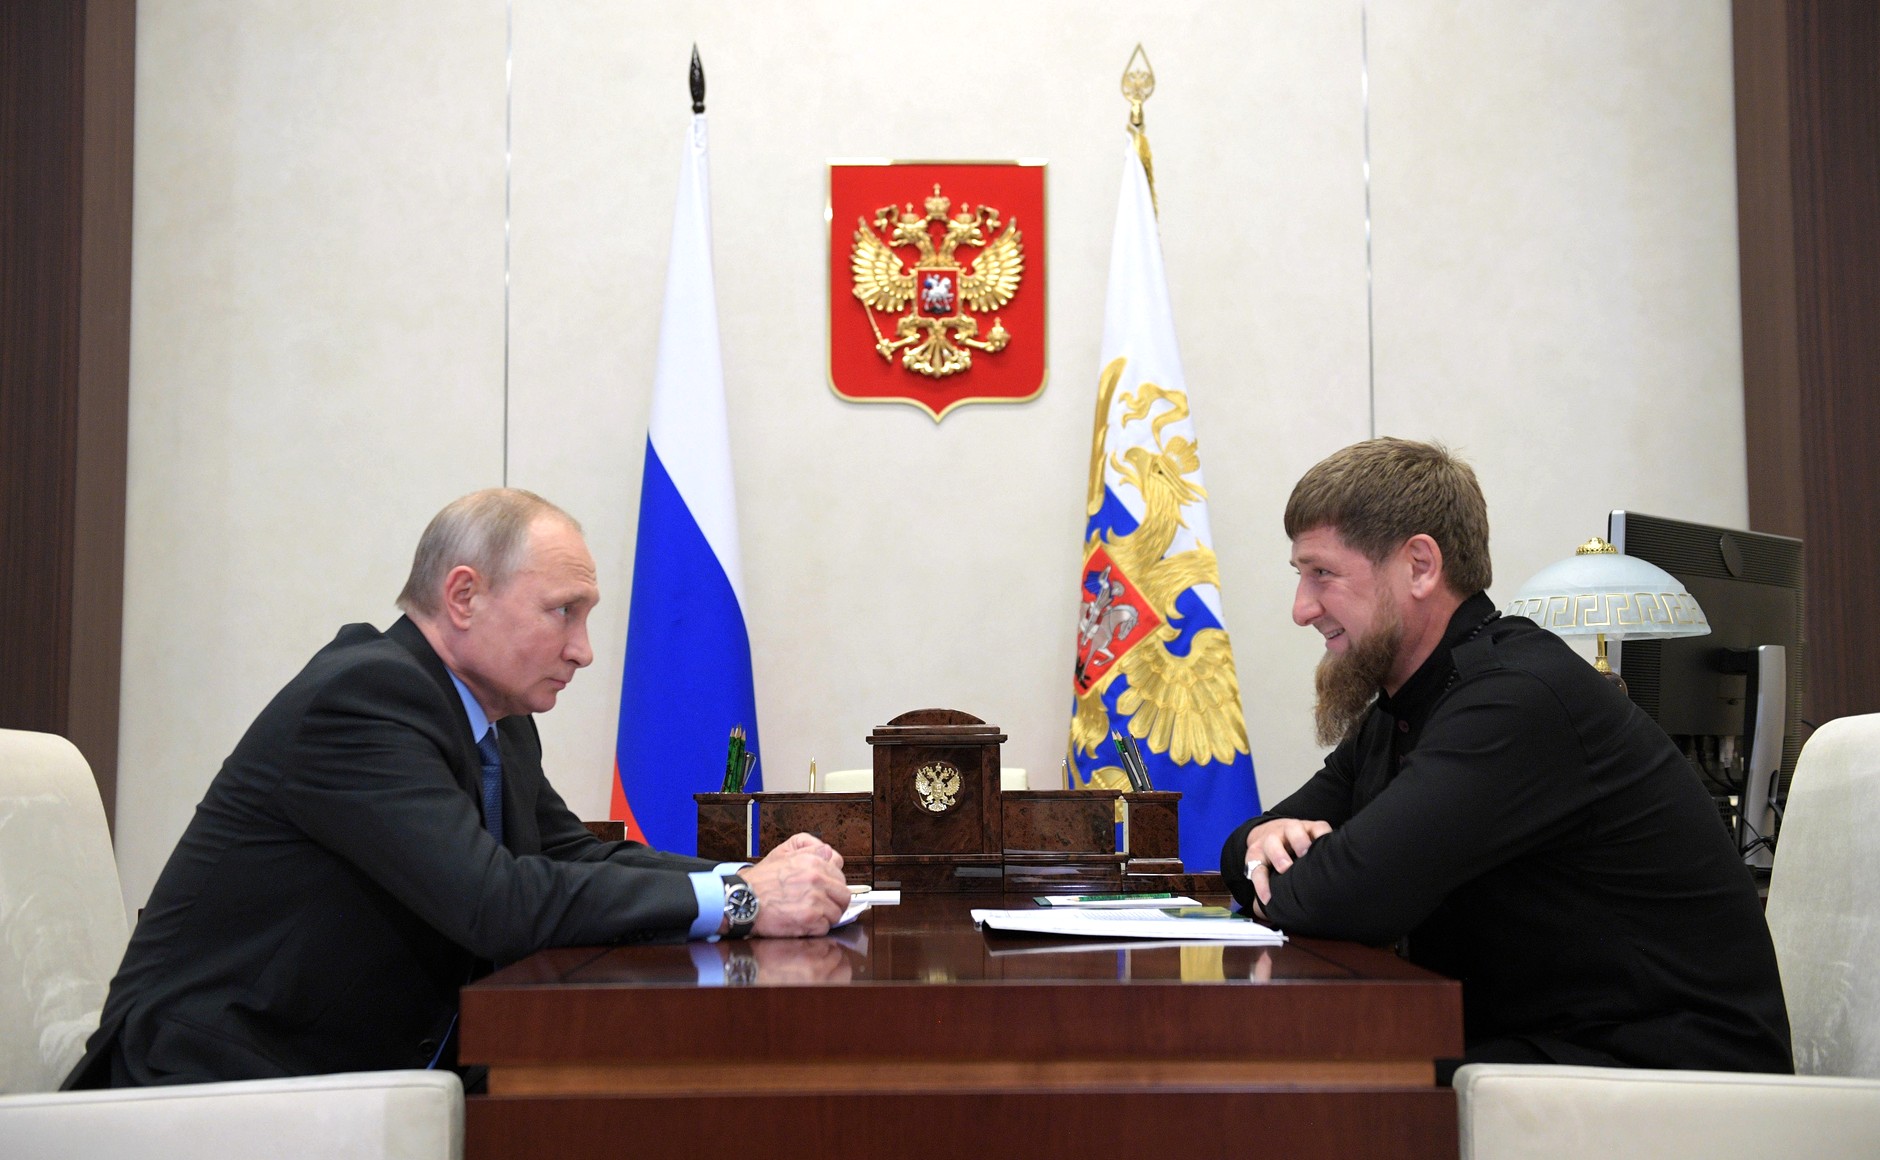 Чеченский лидер подчеркнул, что он не имеет права ослушаться верховного главнокомандующего, иначе перестанет себя уважать Фото:  © Global Look Press / Kremlin Pool